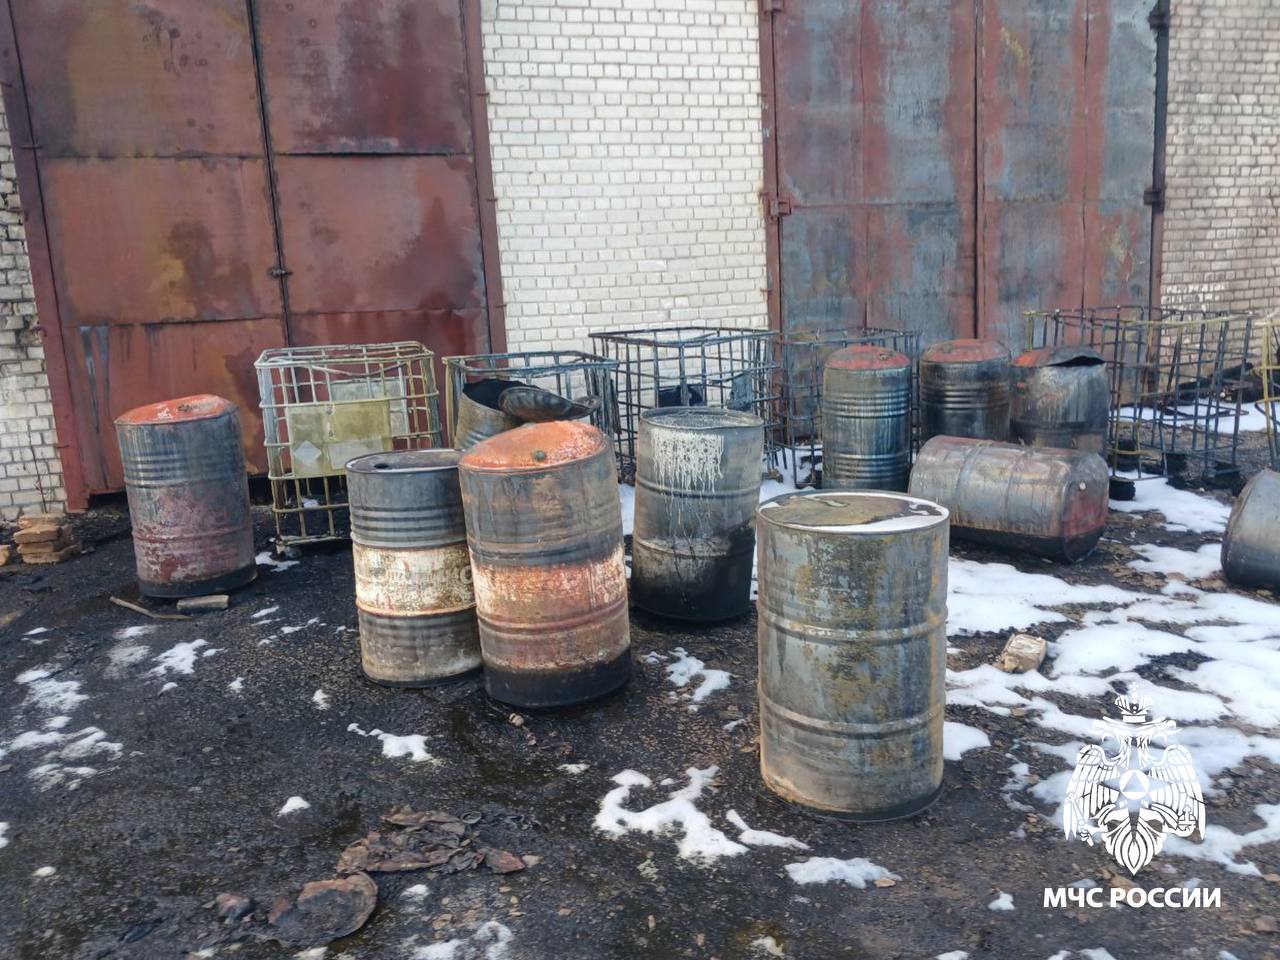 В Заволжском районе Твери пожарные потушили бочки с маслом